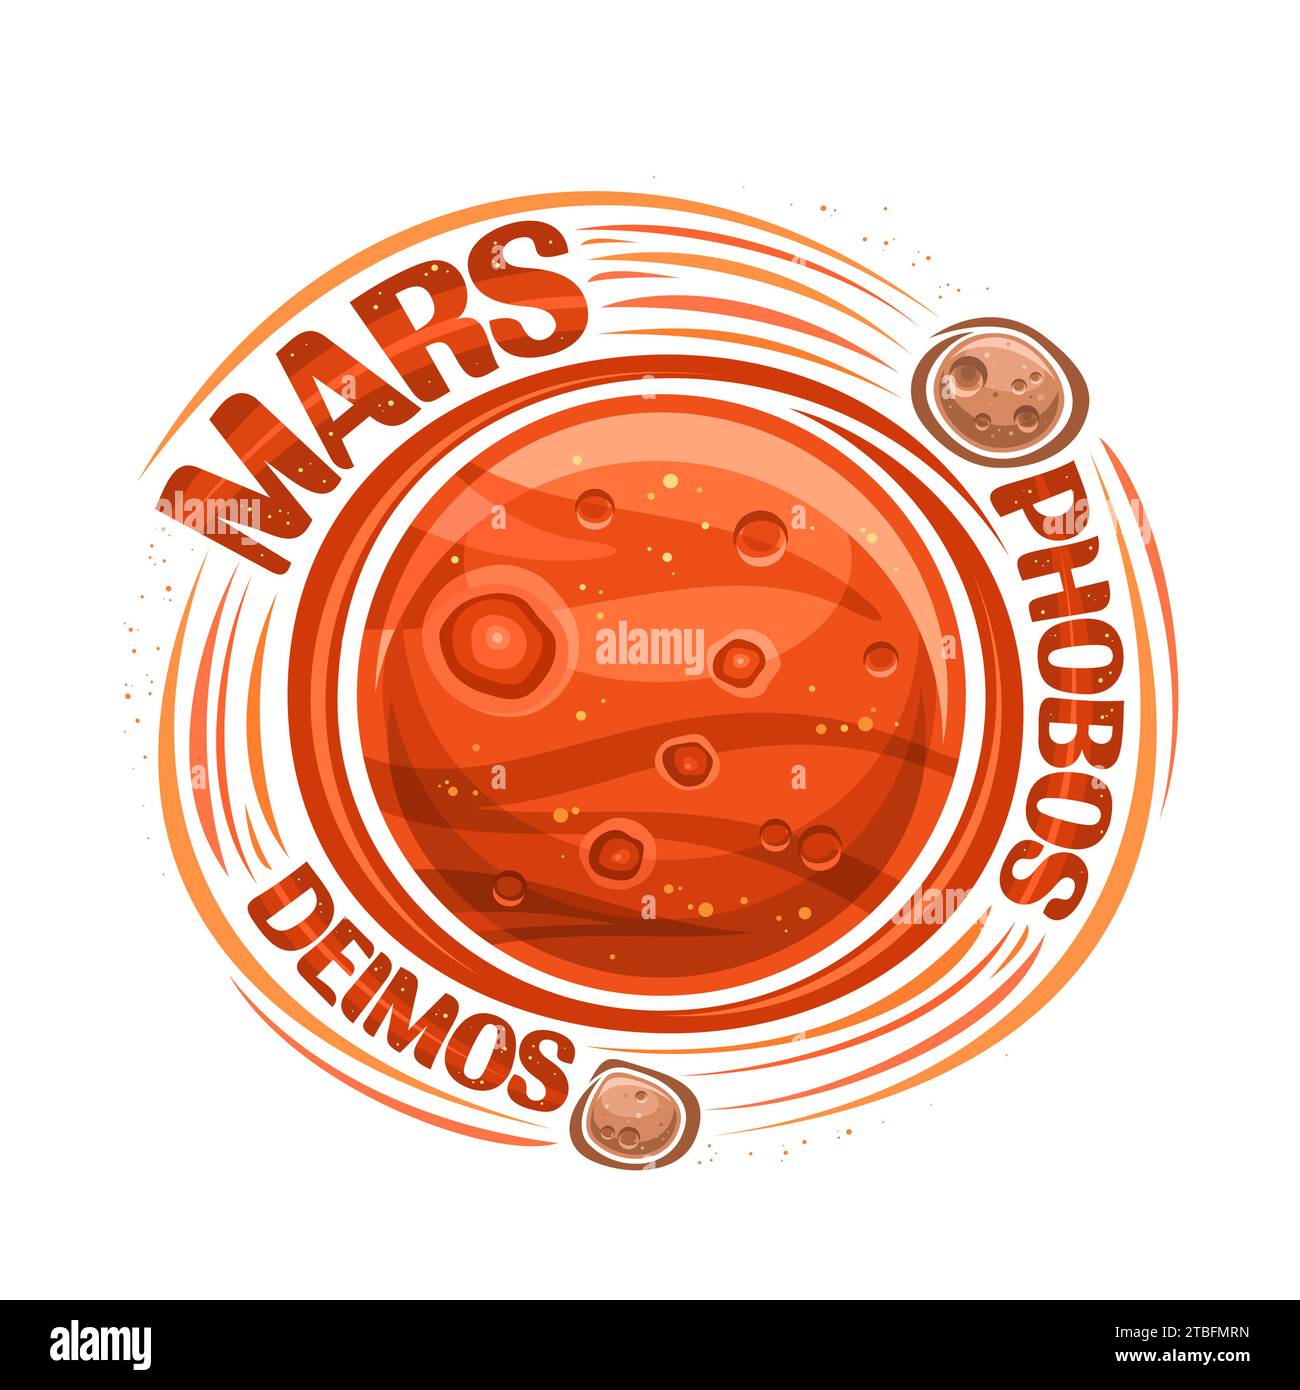 Logo vettoriale per Marte, stampa cosmo decorativa con pianeta marte con satelliti rotanti, superficie del pianeta con crateri e montagne, lettere uniche per Illustrazione Vettoriale